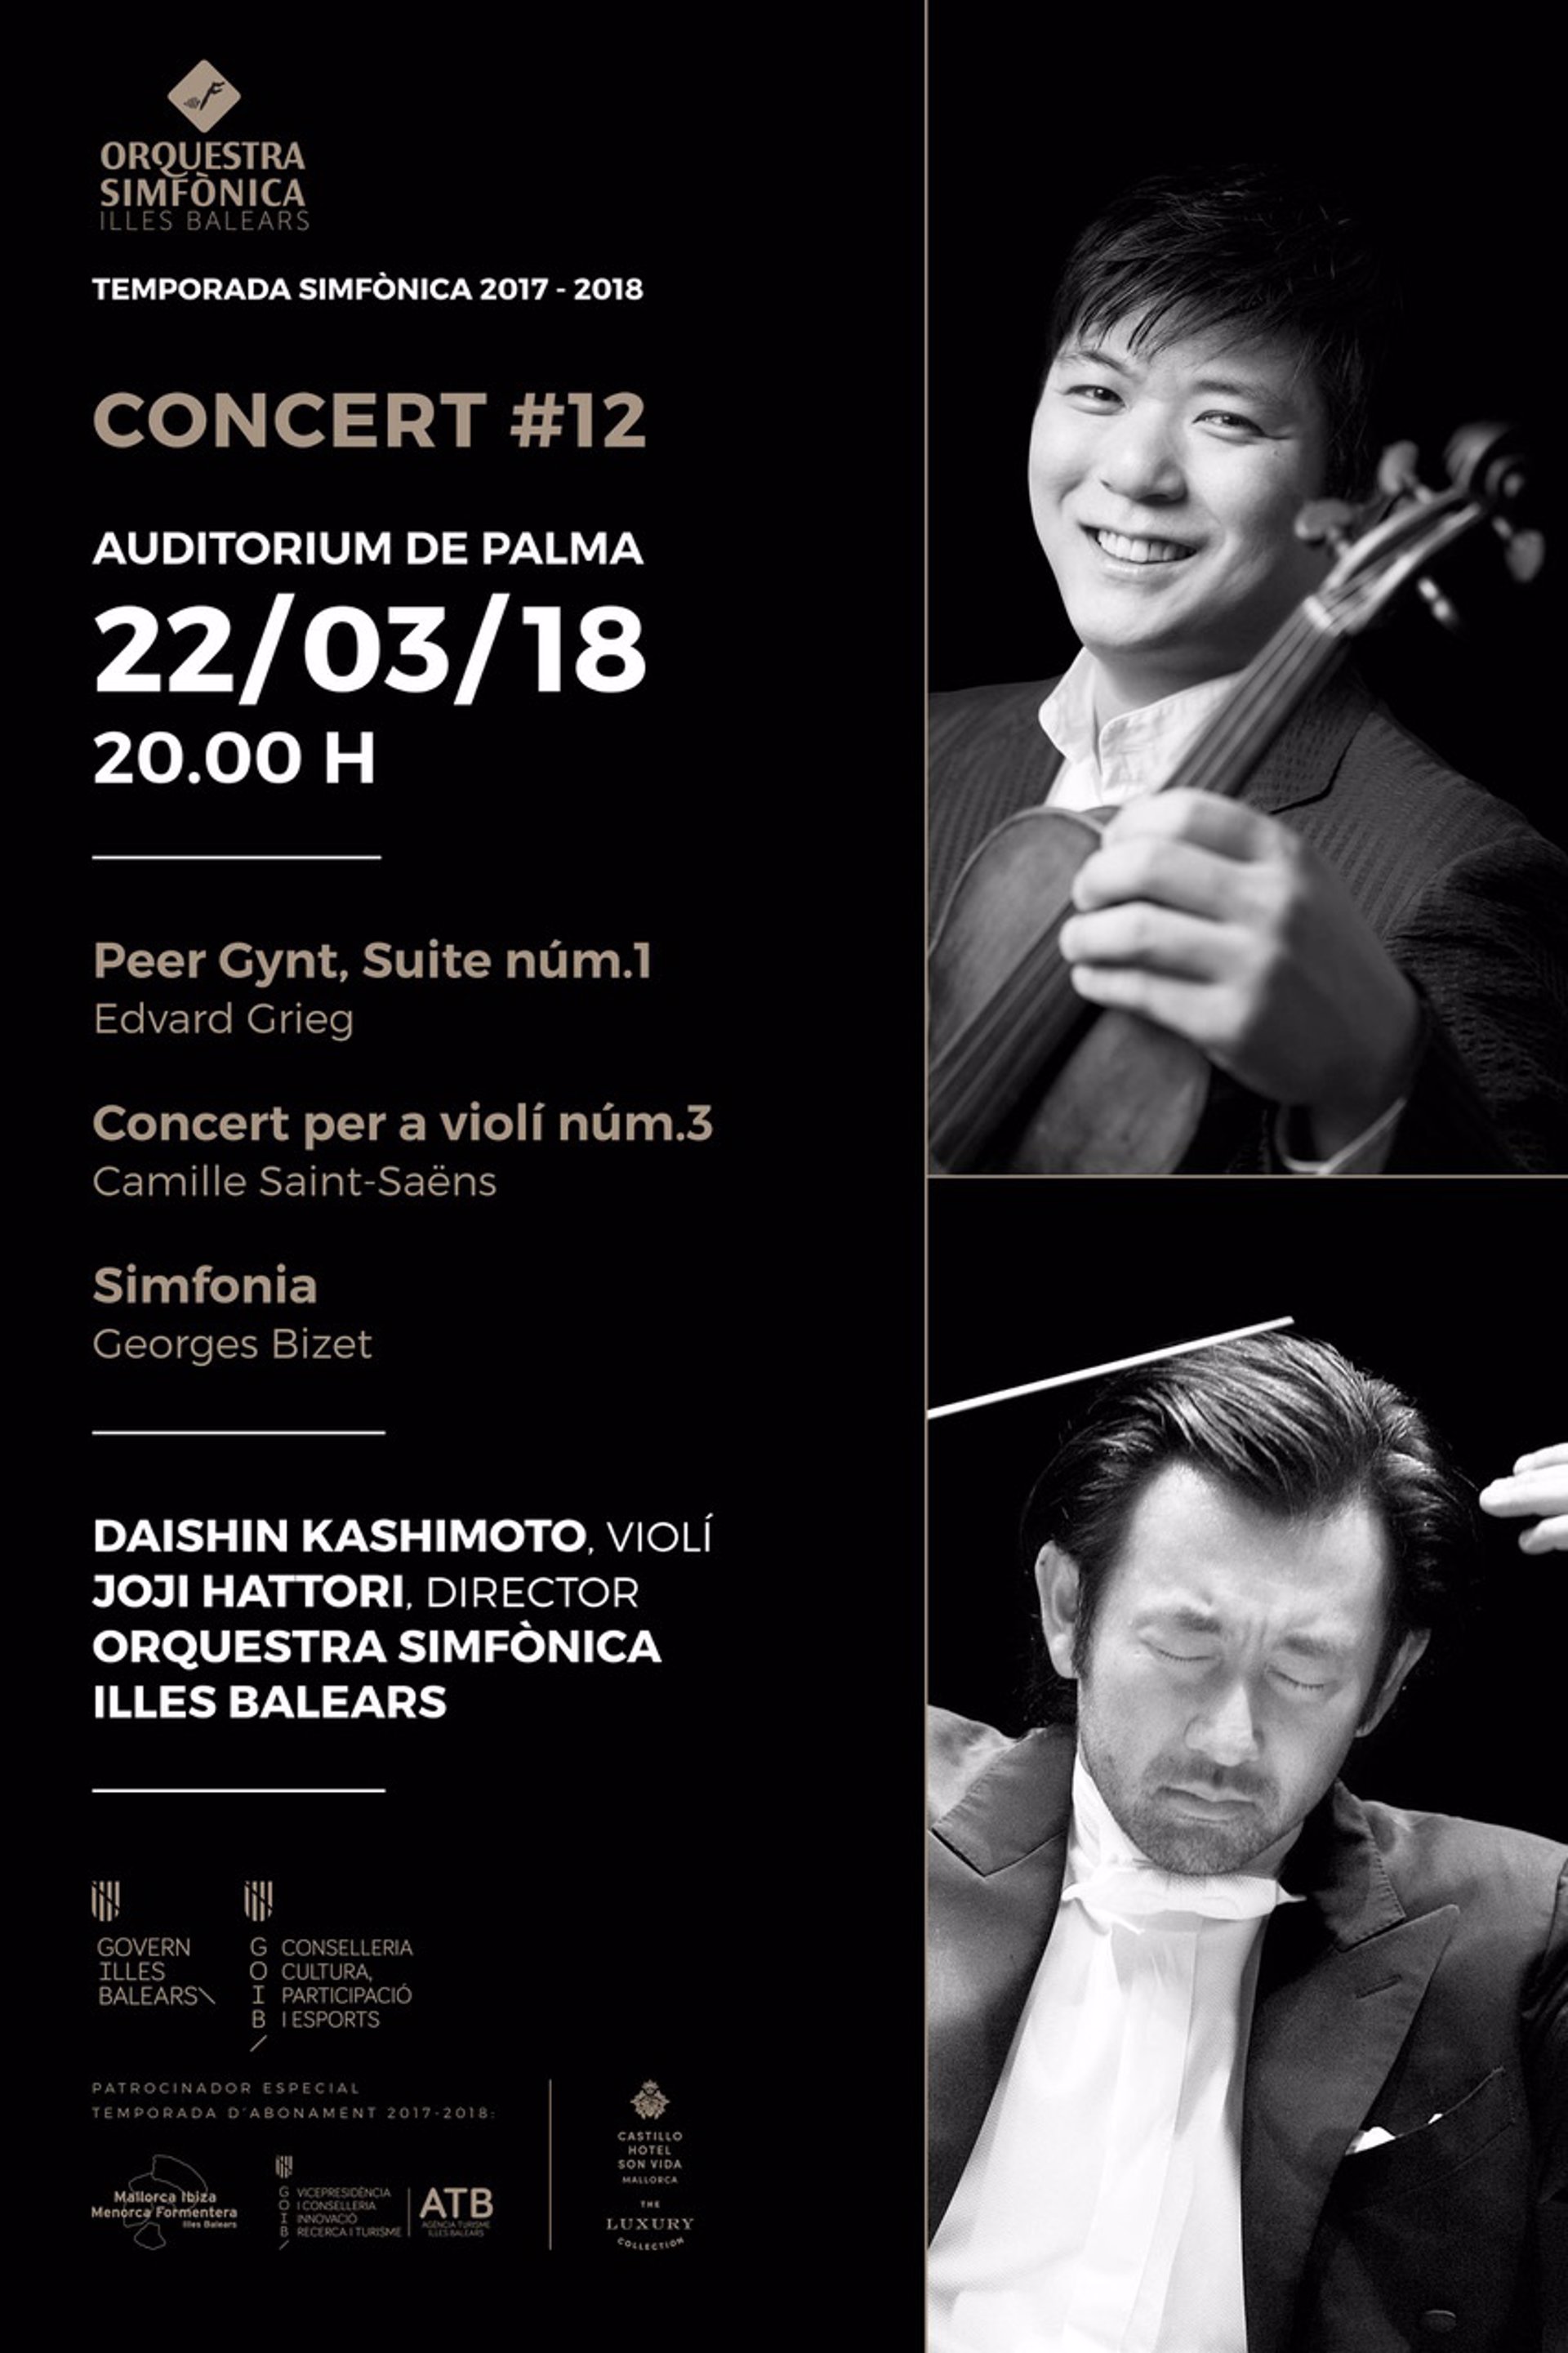 El romanticismo de Edvard Grieg, Camille Saint-Saëns y Georges Bizet protagonizan el duodécimo concierto de la OSIB